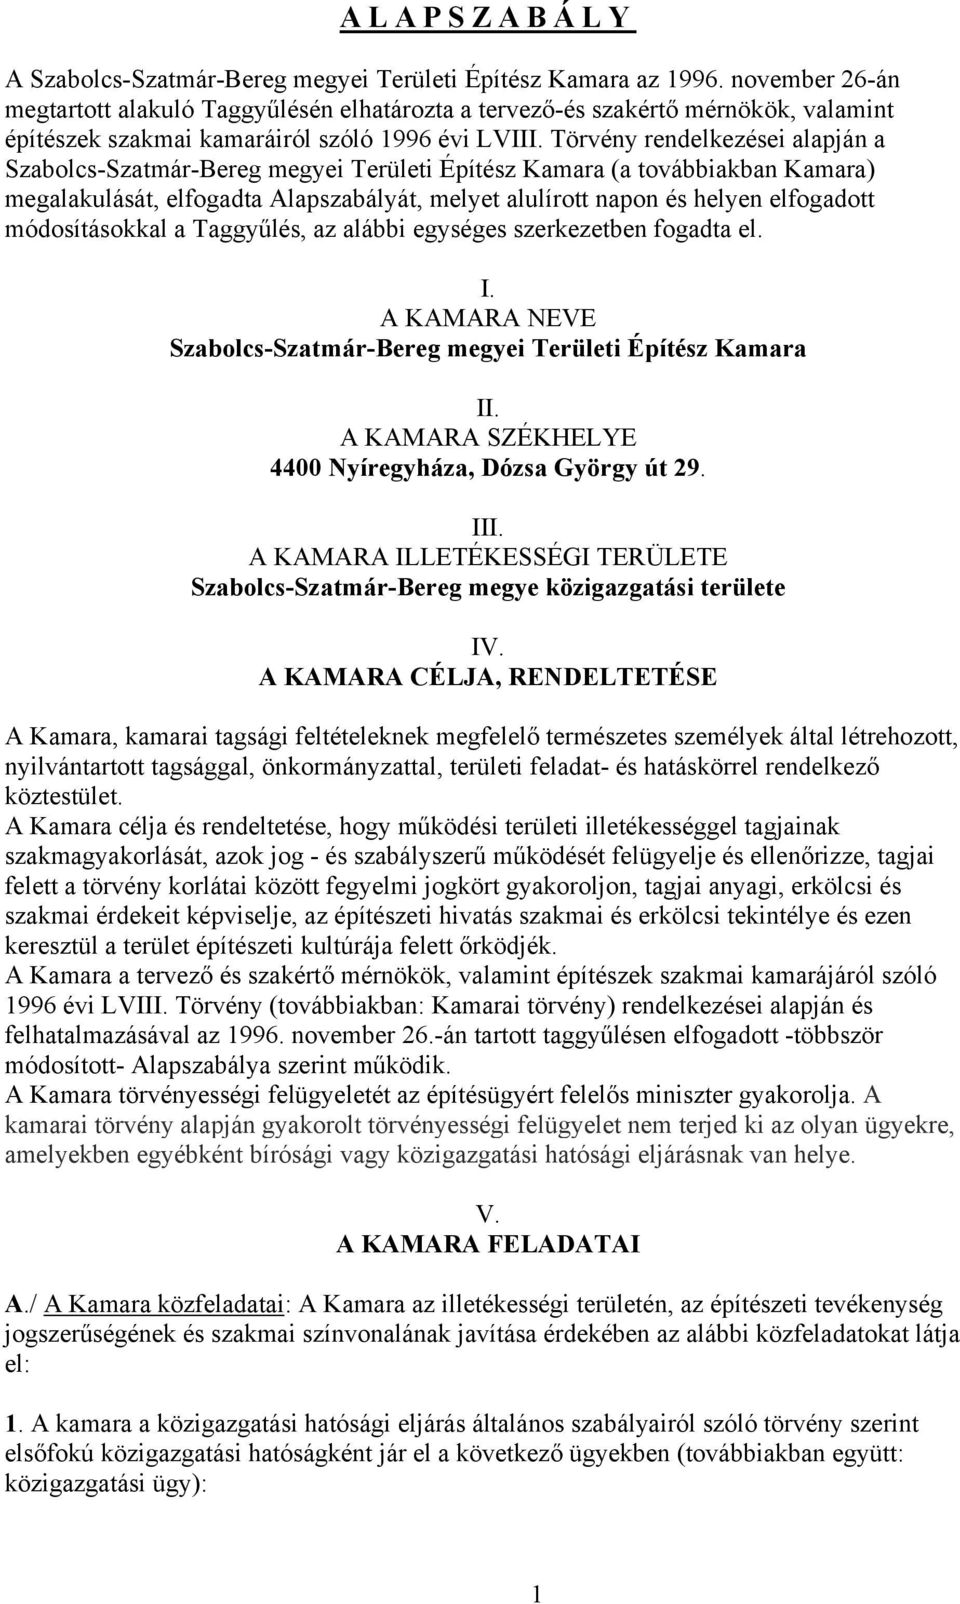 Törvény rendelkezései alapján a Szabolcs-Szatmár-Bereg megyei Területi Építész Kamara (a továbbiakban Kamara) megalakulását, elfogadta Alapszabályát, melyet alulírott napon és helyen elfogadott